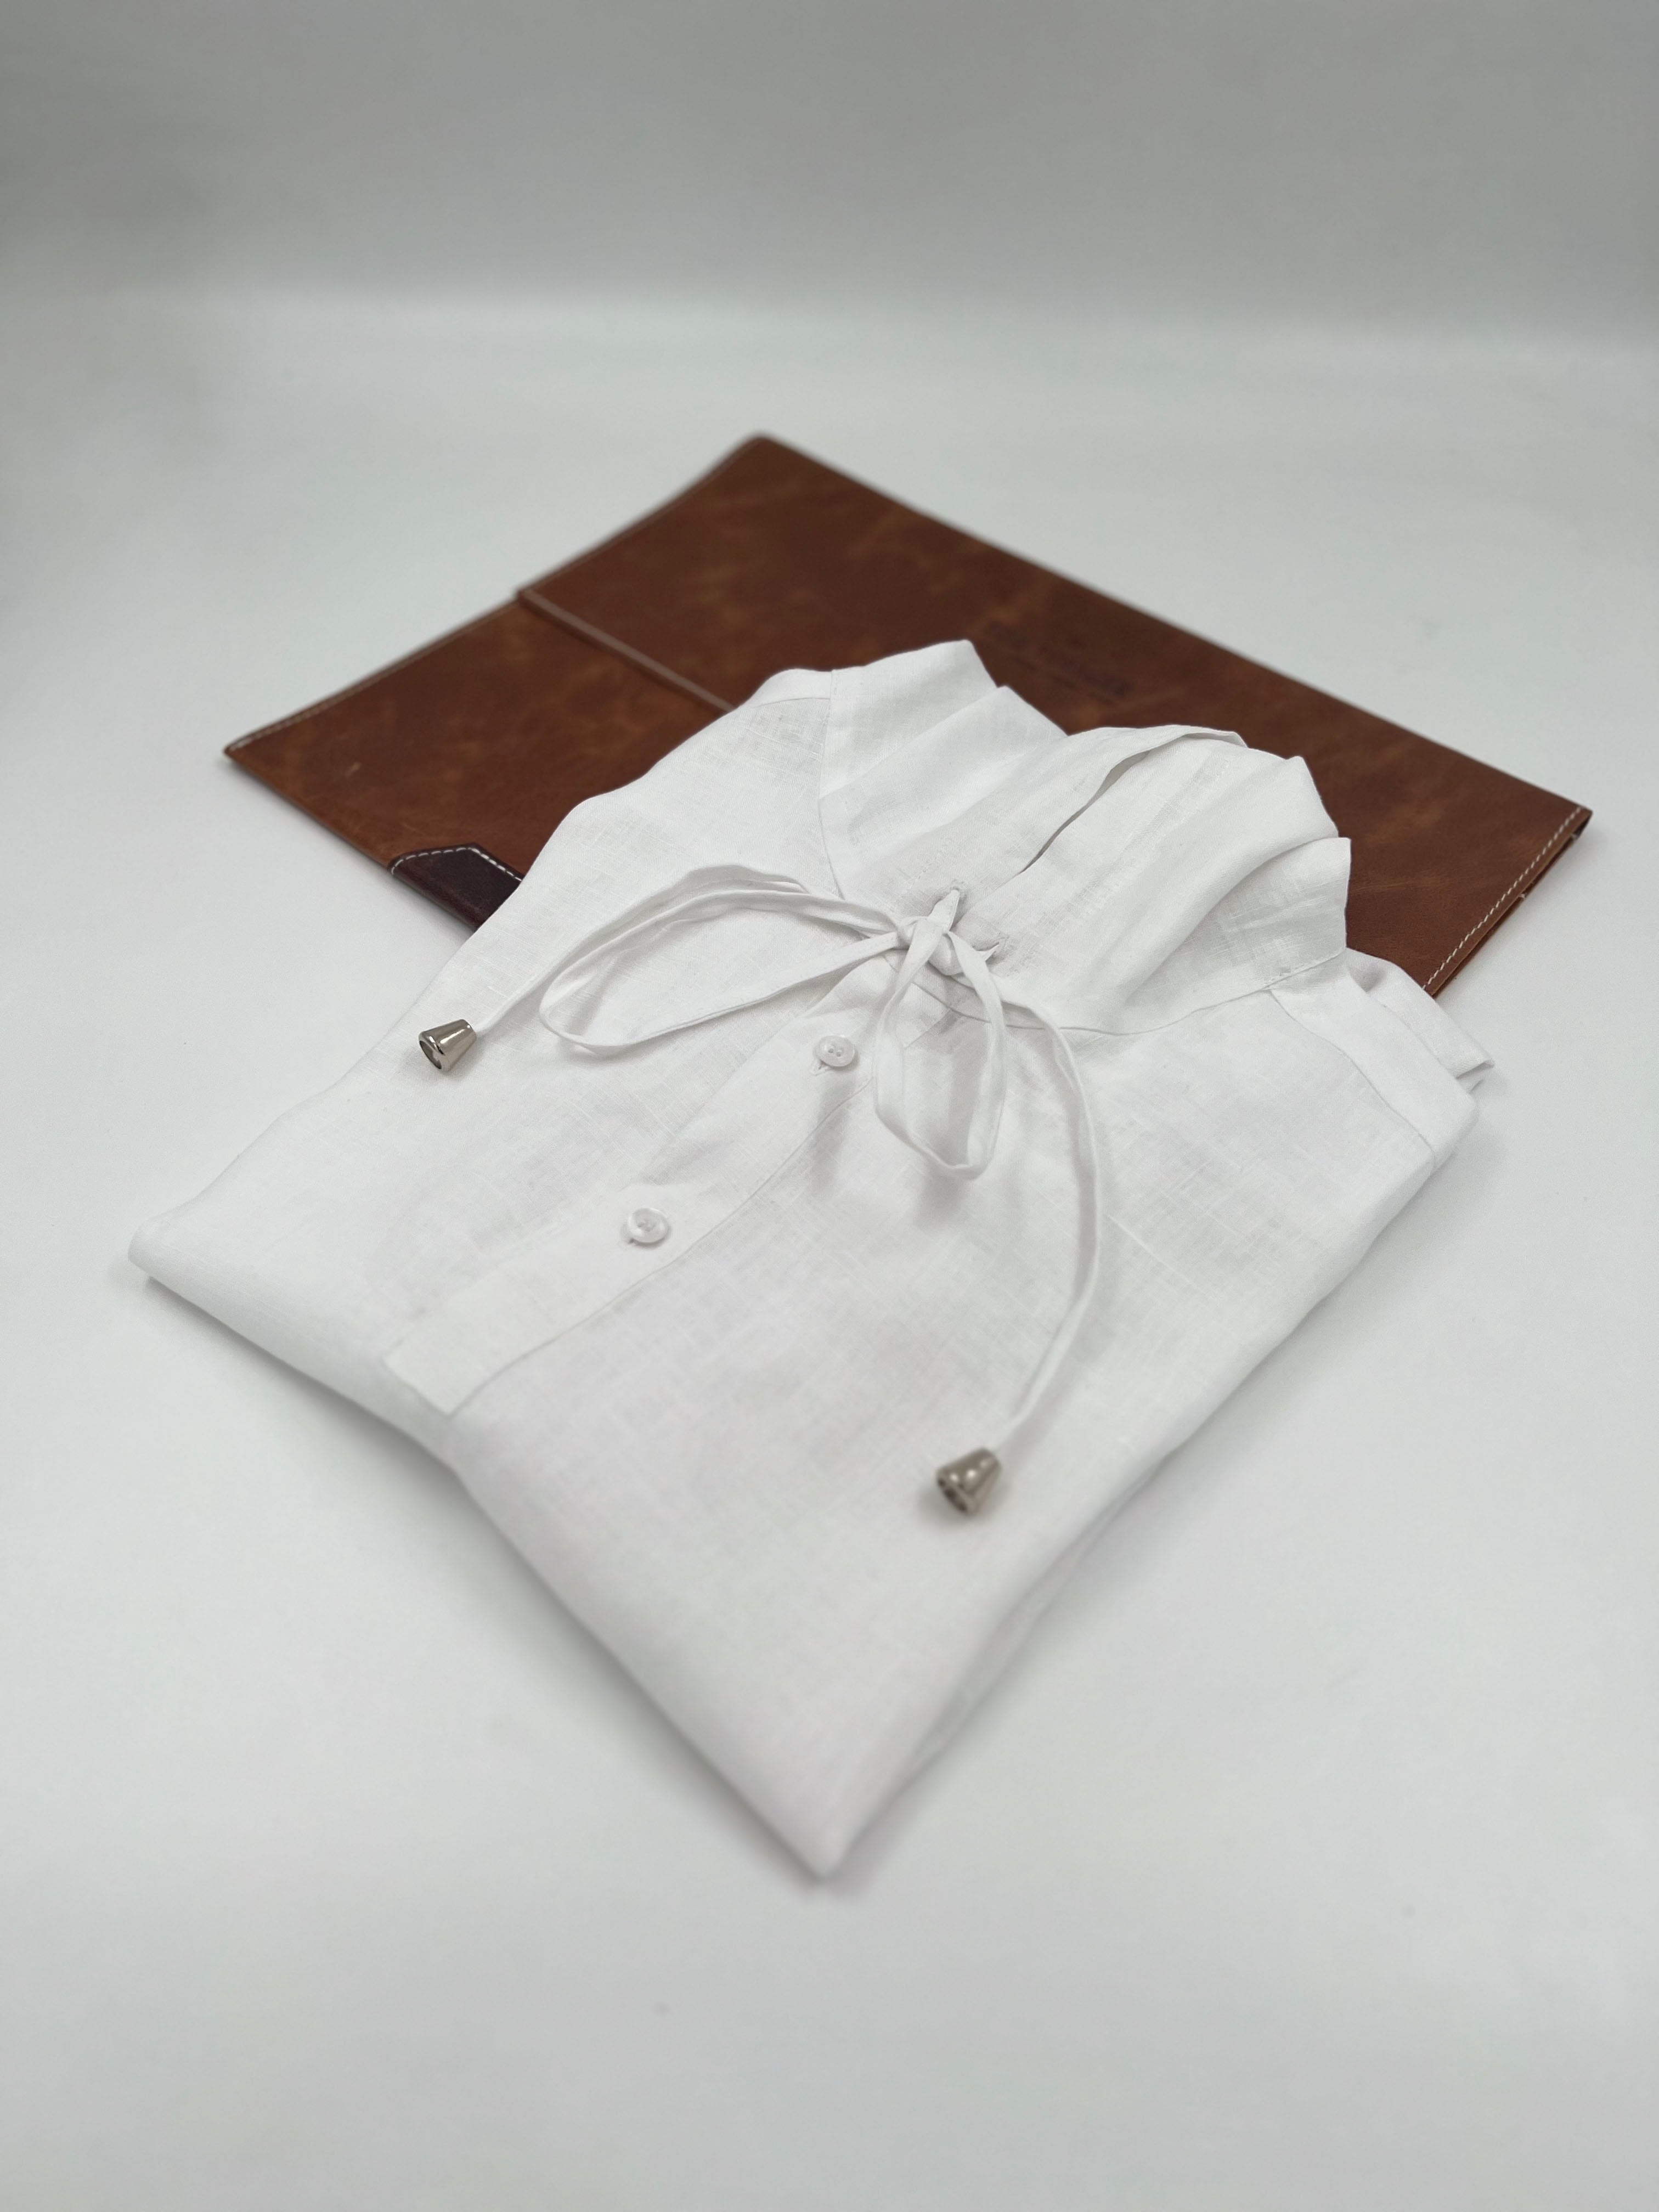 Madrid Linen Hoodie Shirt - Long Sleeve - White - Men's shirt- Tom Voyager SA - folded